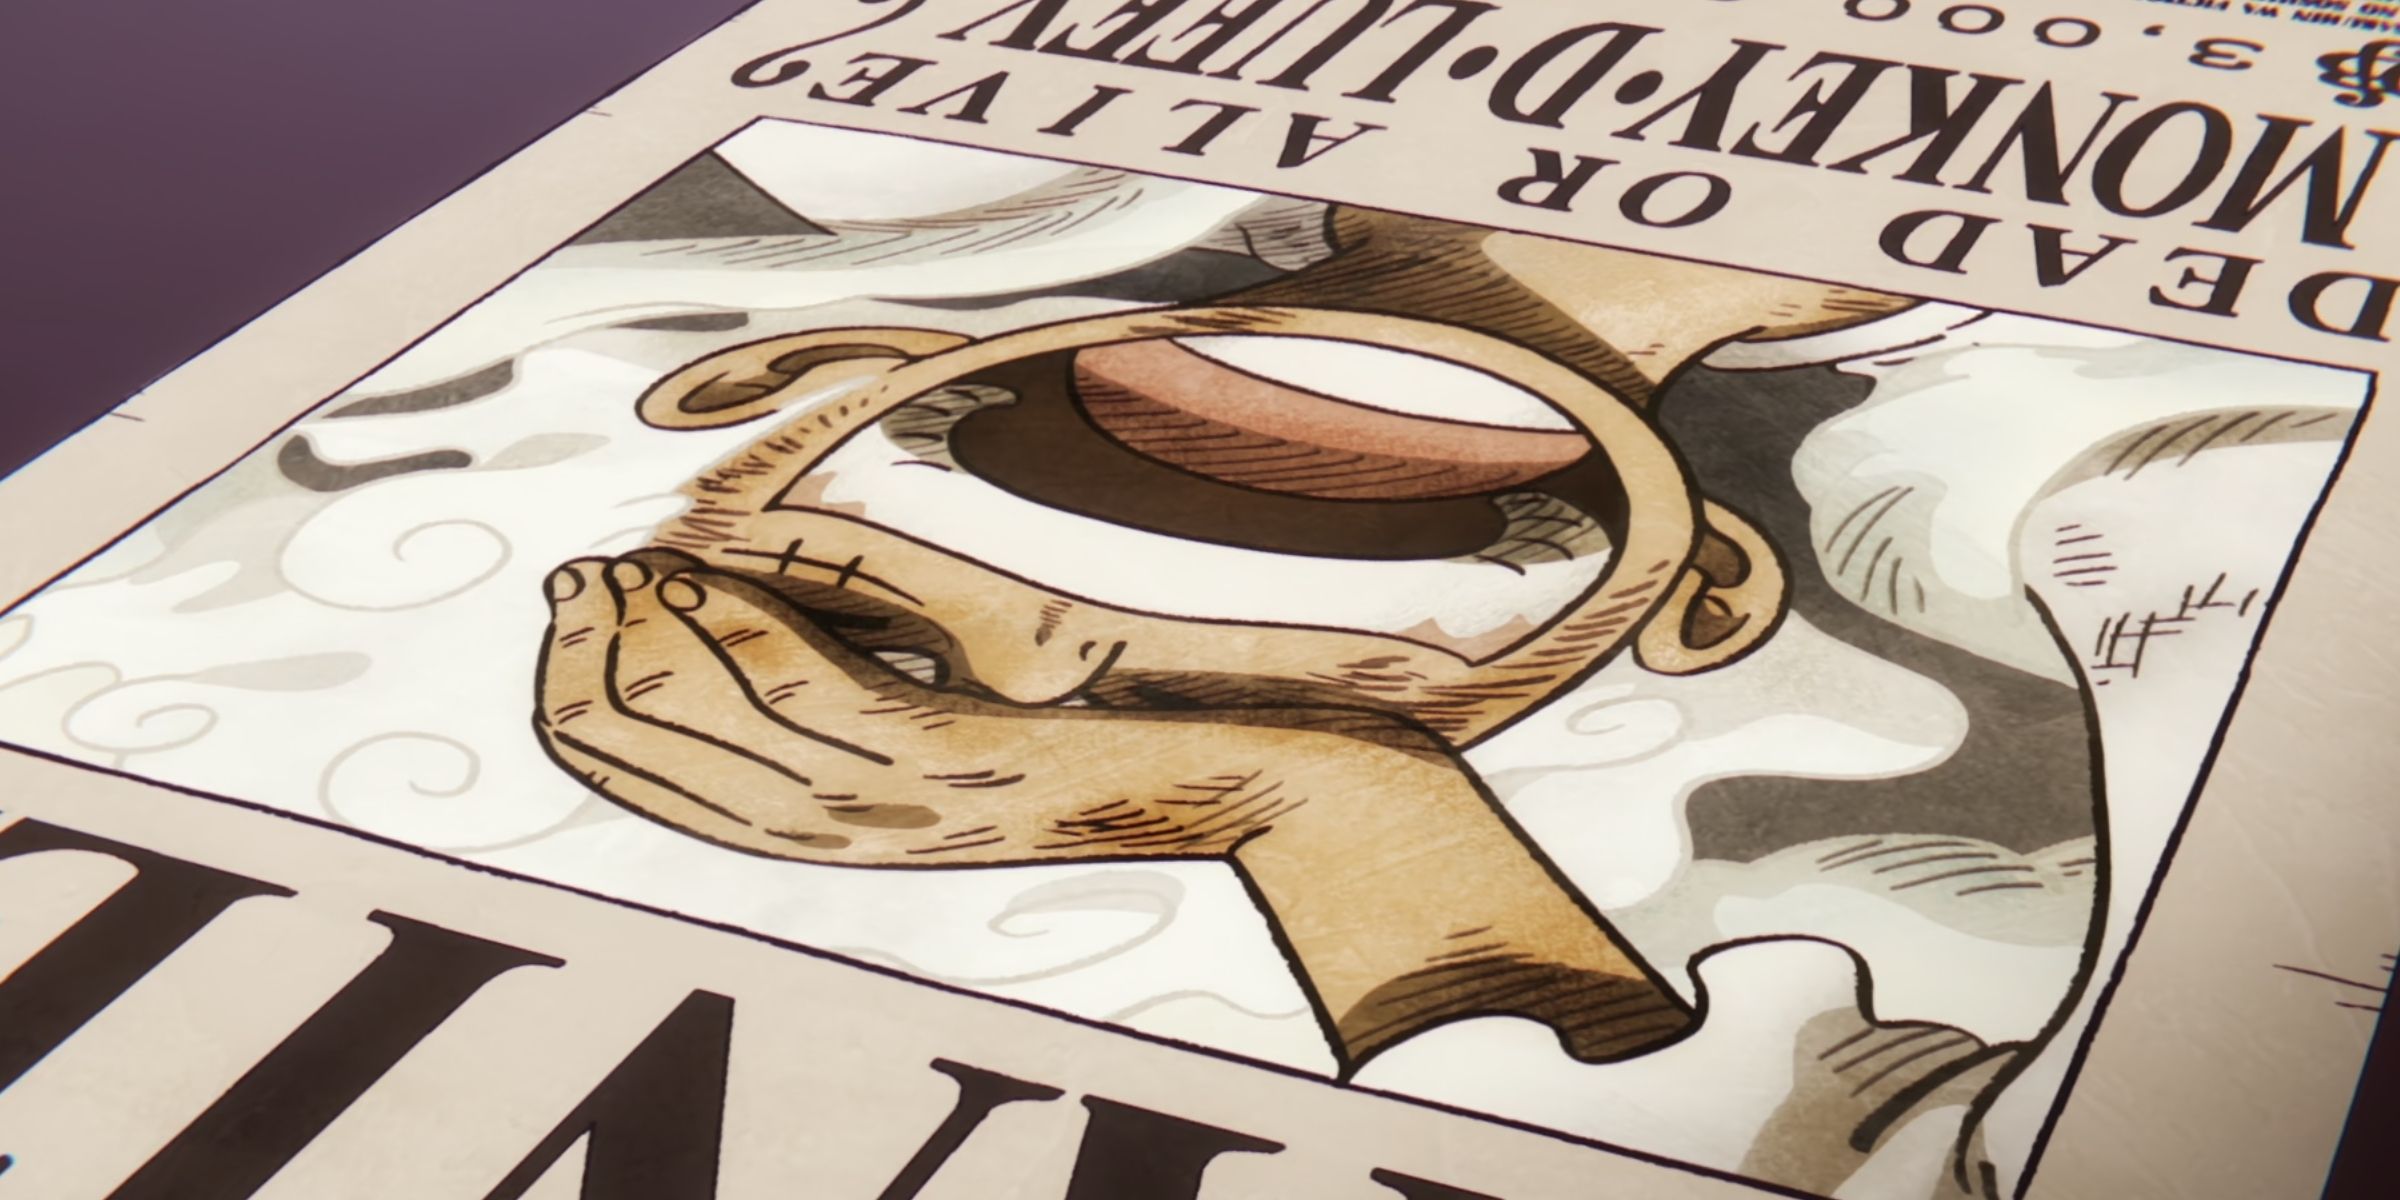 Luffy's bounty poster